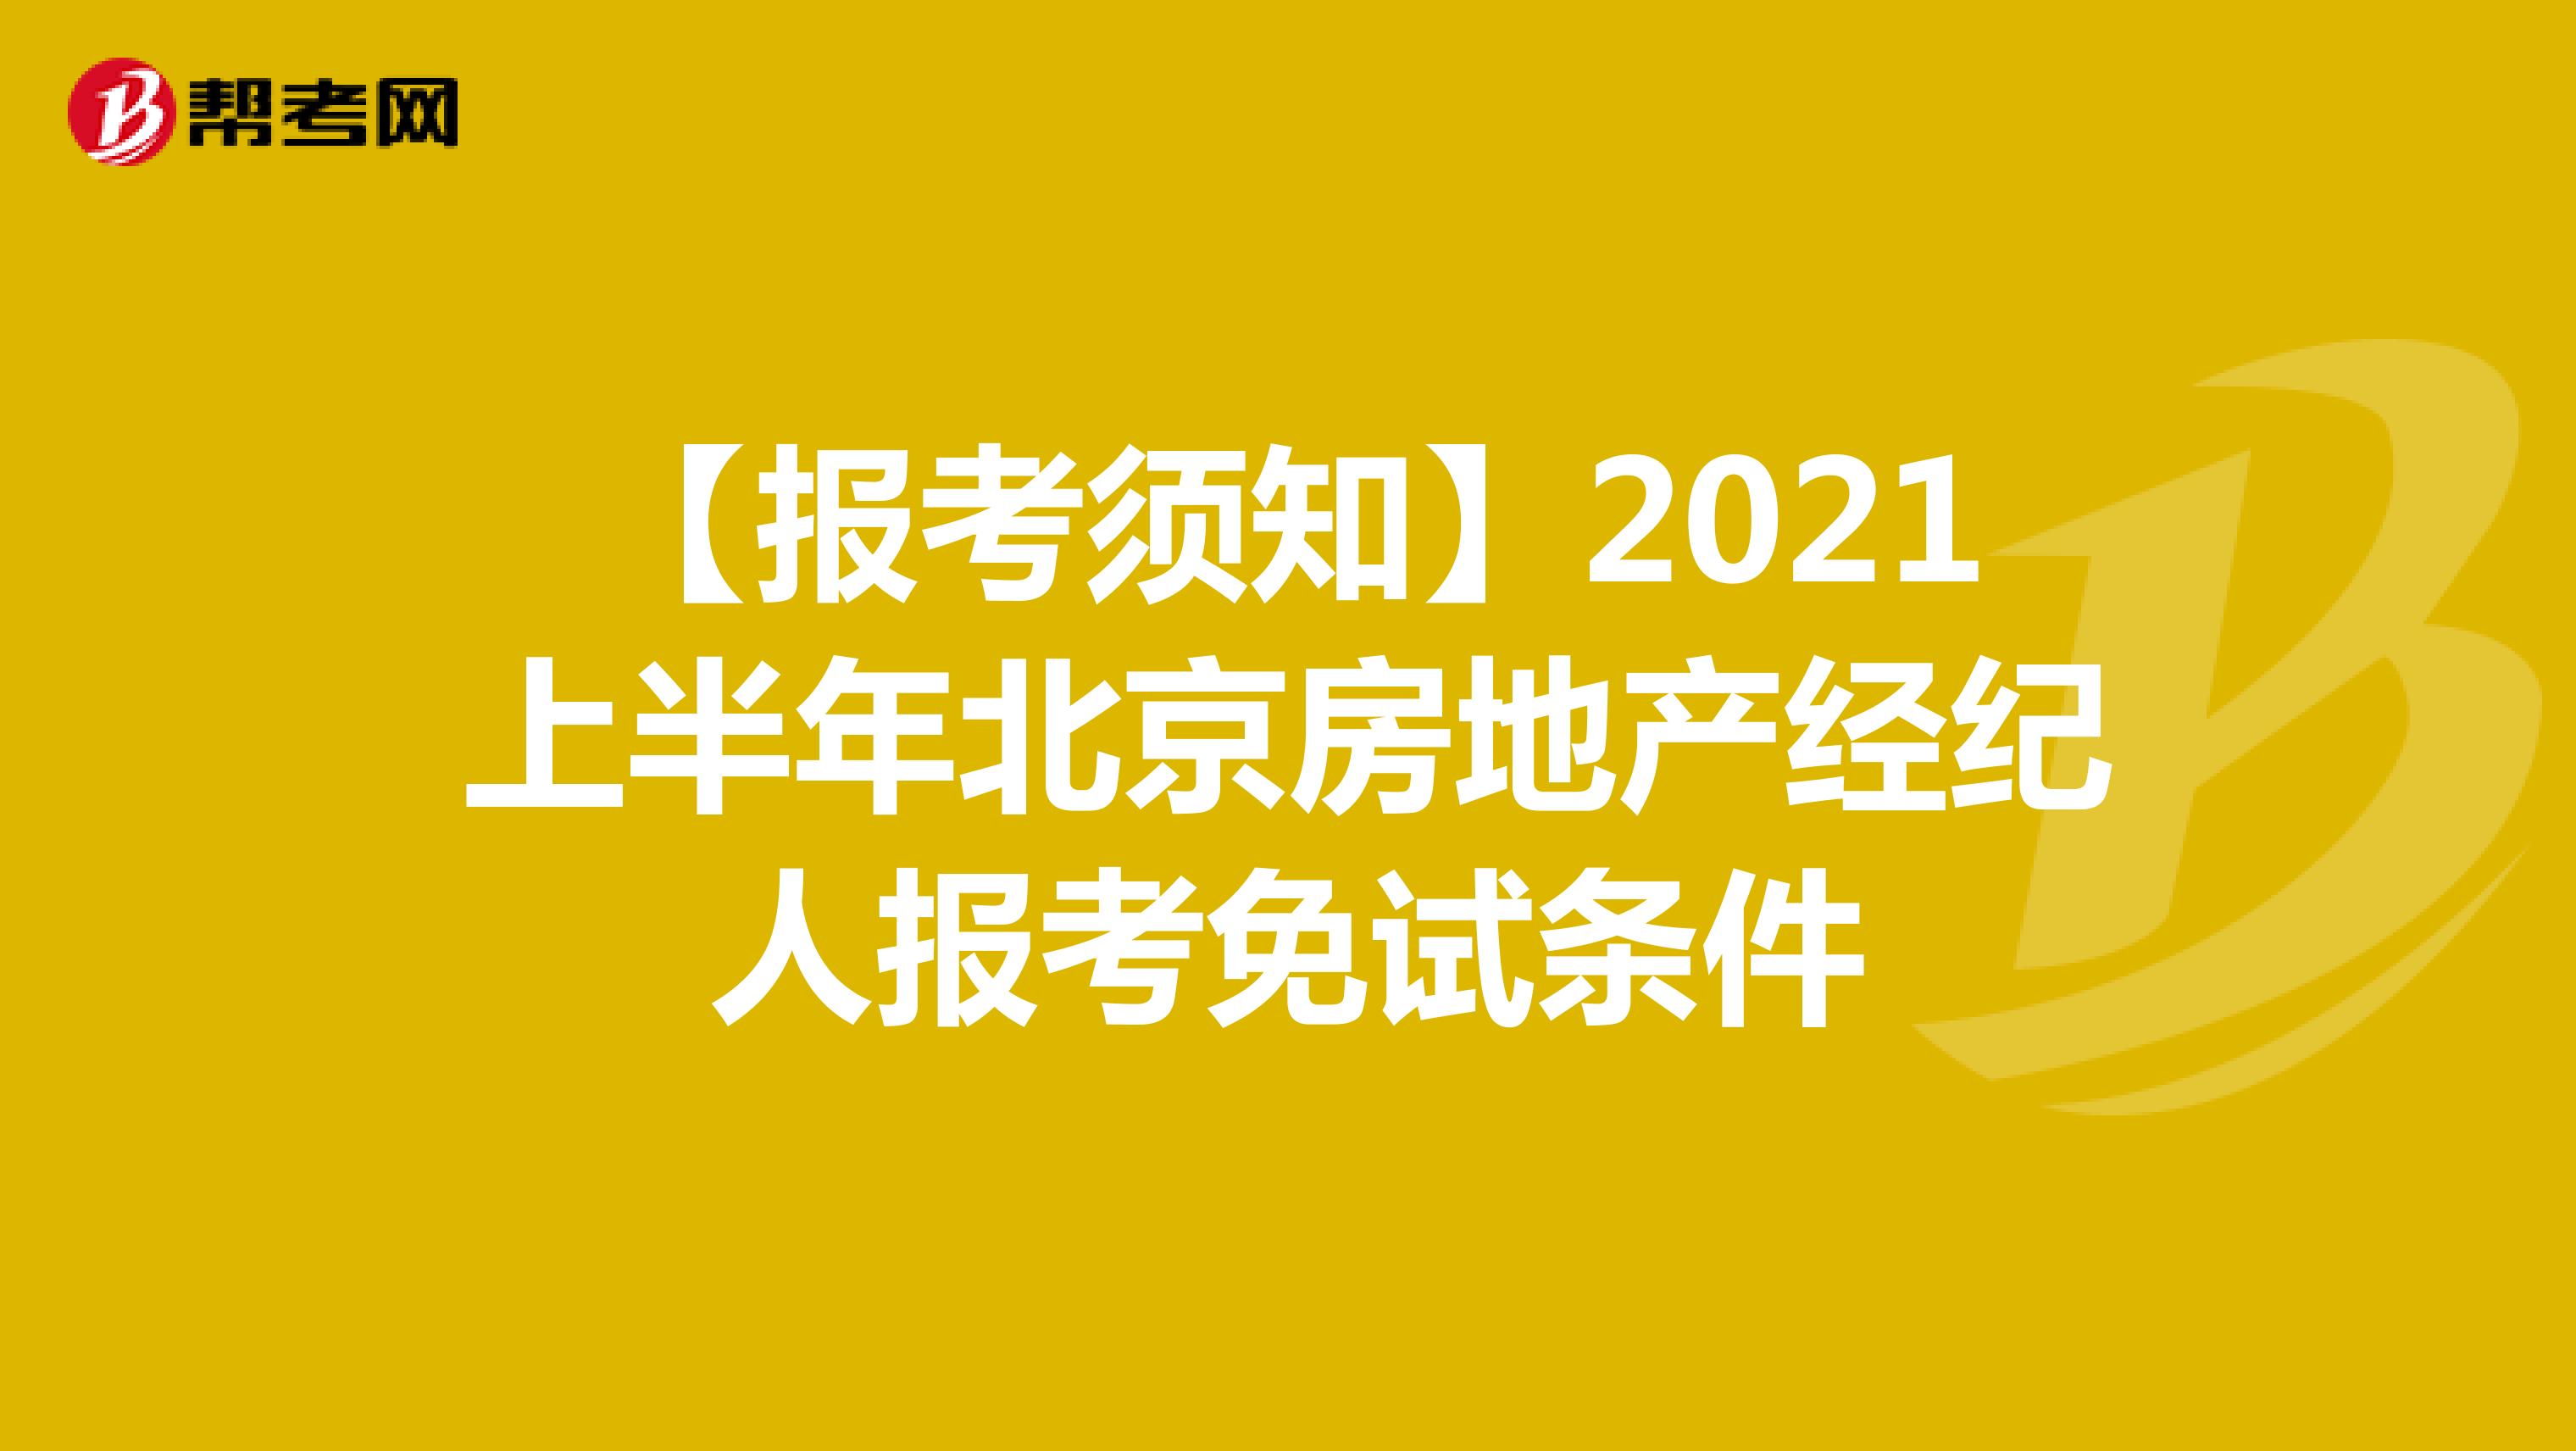 【报考须知】2021上半年北京房地产经纪人报考免试条件